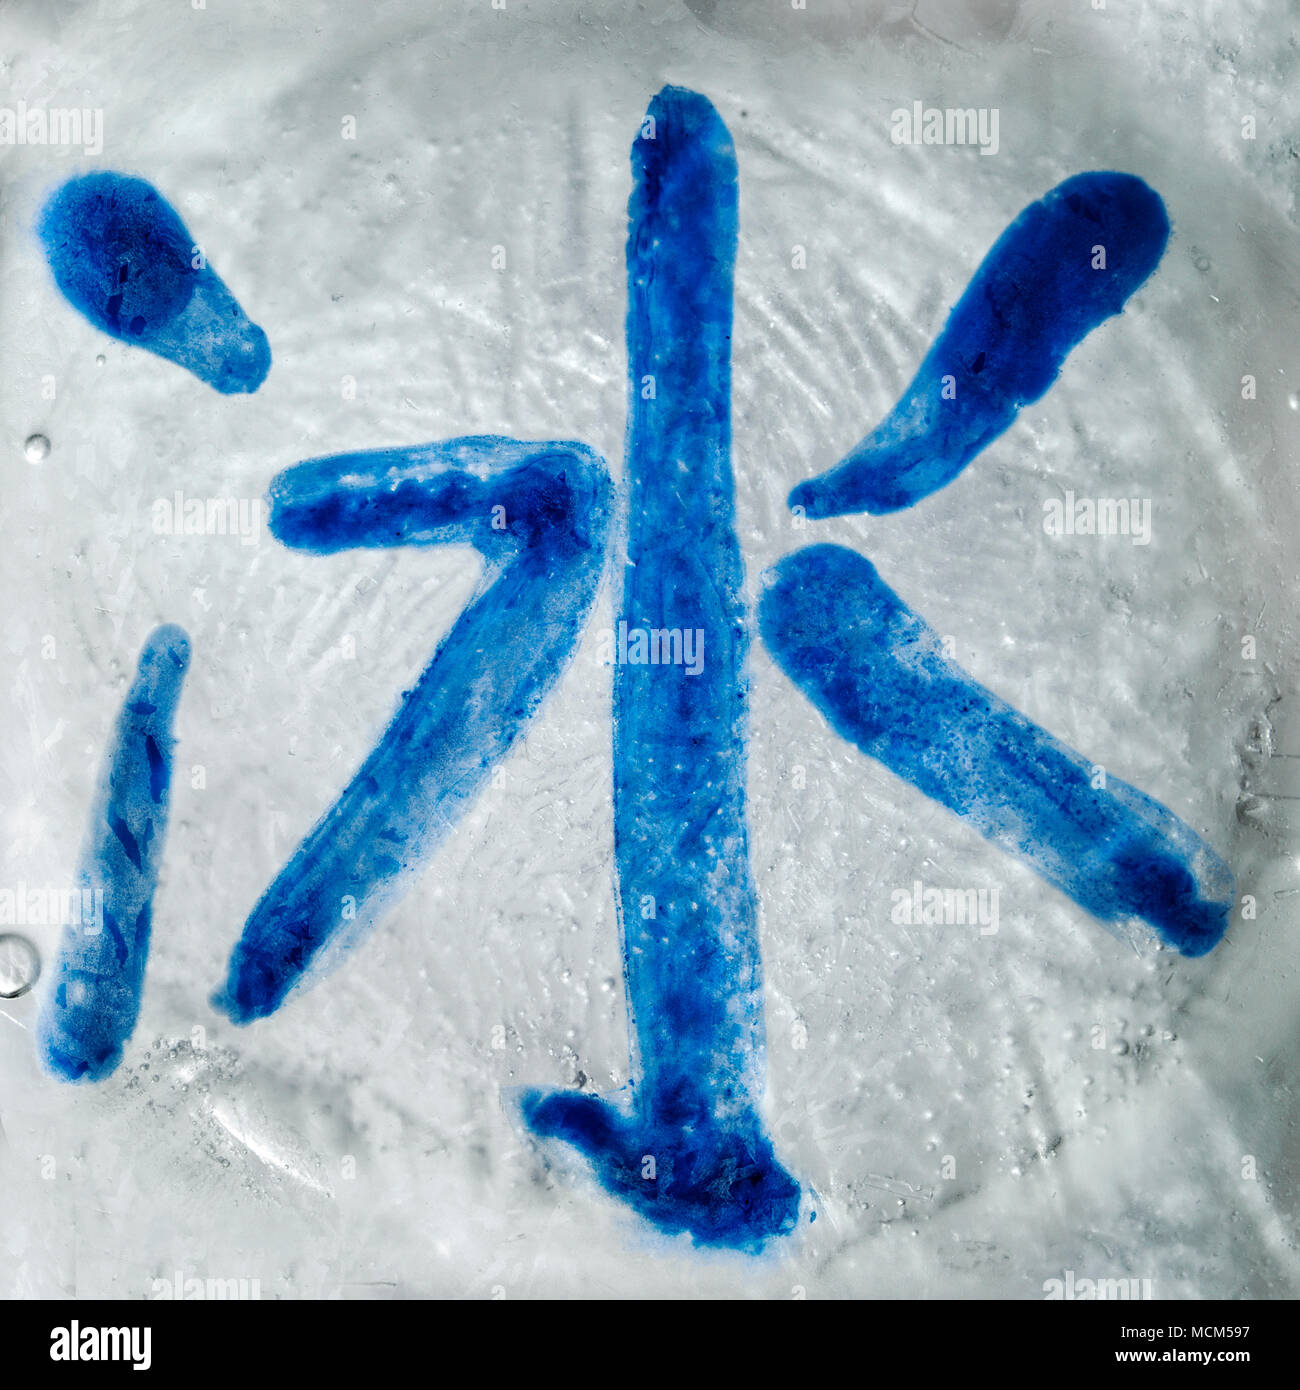 Symbole calligraphique chinois bing - la glace, peinte sur une glace de blck Banque D'Images